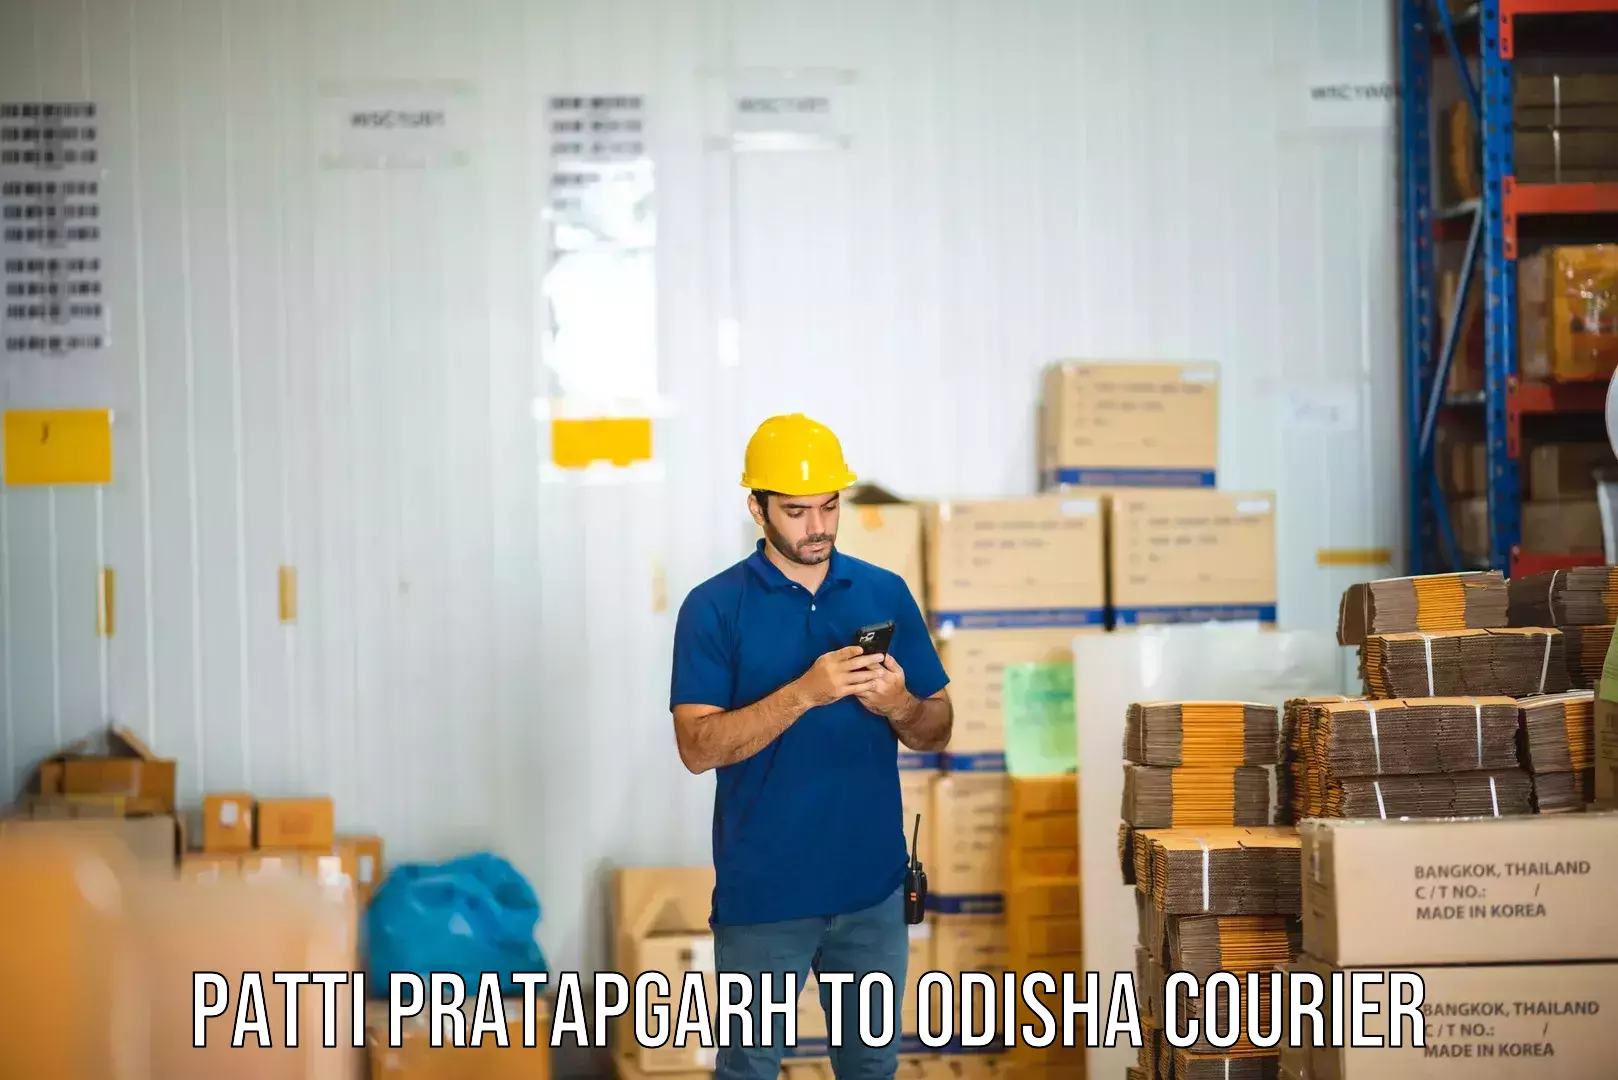 User-friendly delivery service Patti Pratapgarh to Birmitrapur